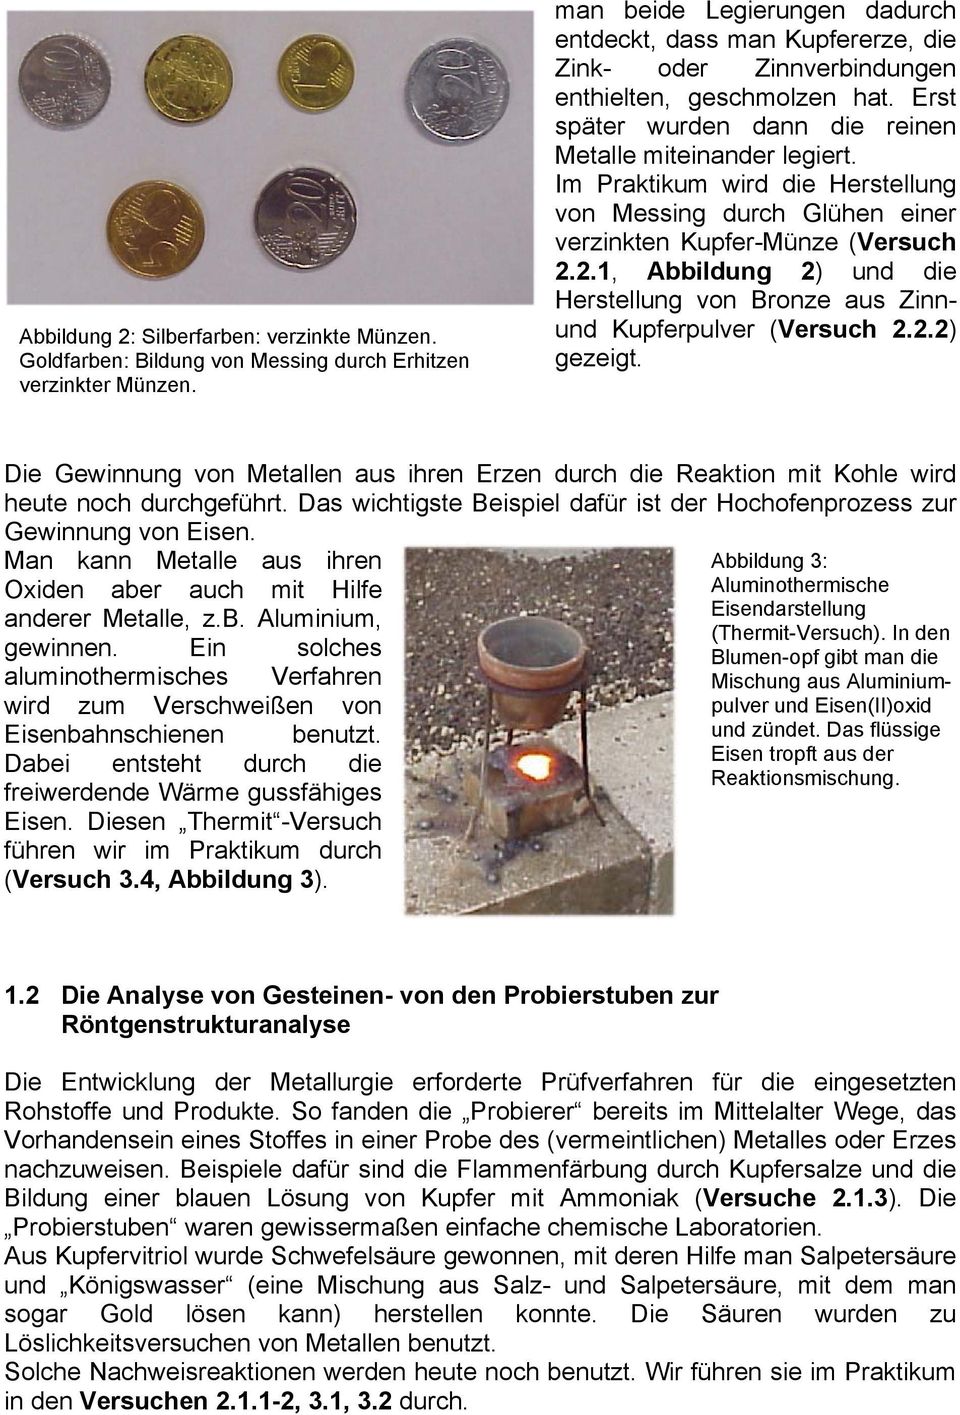 Im Praktikum wird die Herstellung von Messing durch Glühen einer verzinkten Kupfer-Münze (Versuch 2.2.1, Abbildung 2) und die Herstellung von Bronze aus Zinnund Kupferpulver (Versuch 2.2.2) gezeigt.